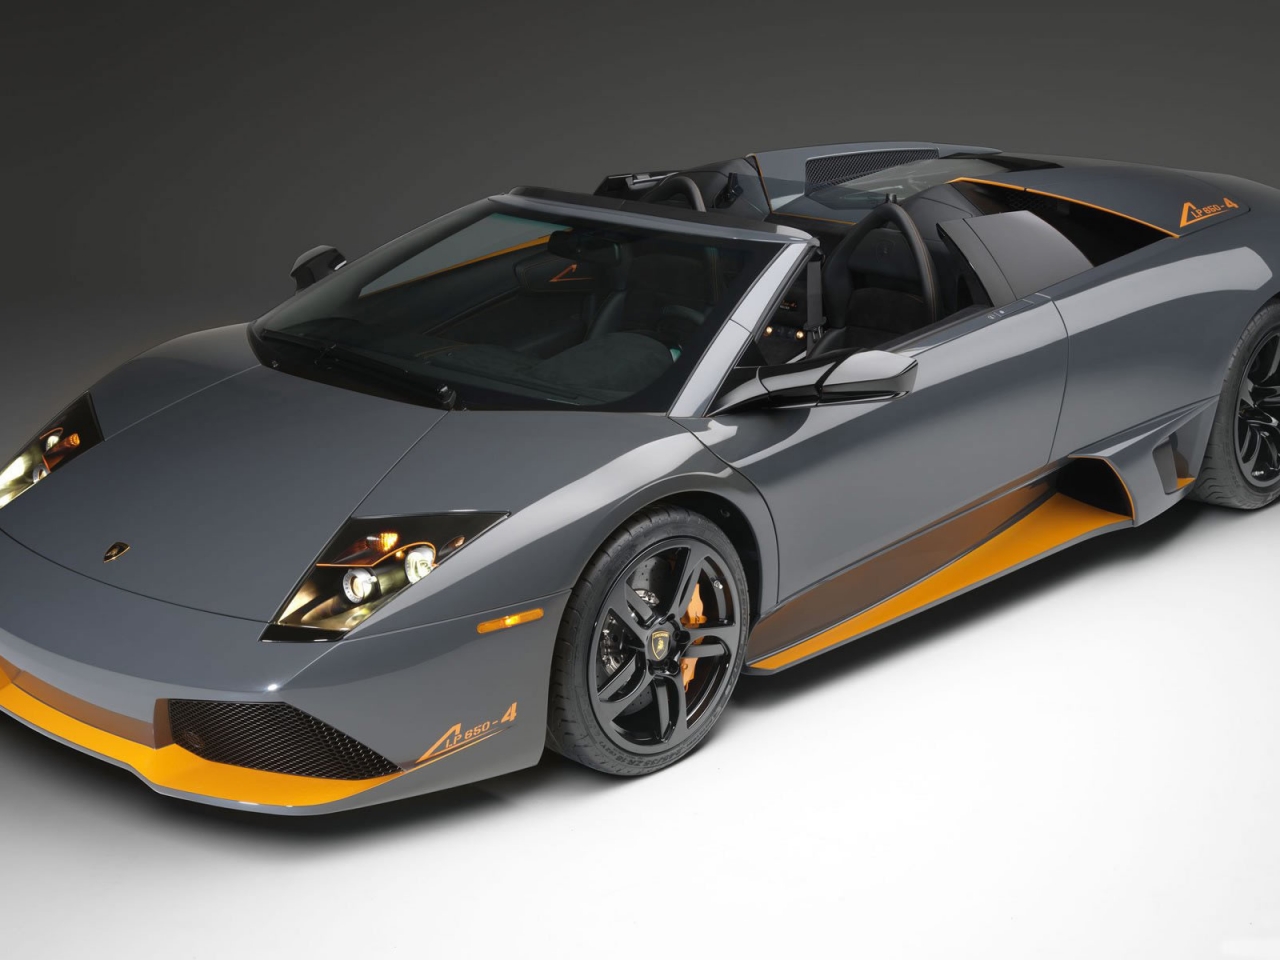 Lamborghini lp 650 Front Angle for 1280 x 960 resolution